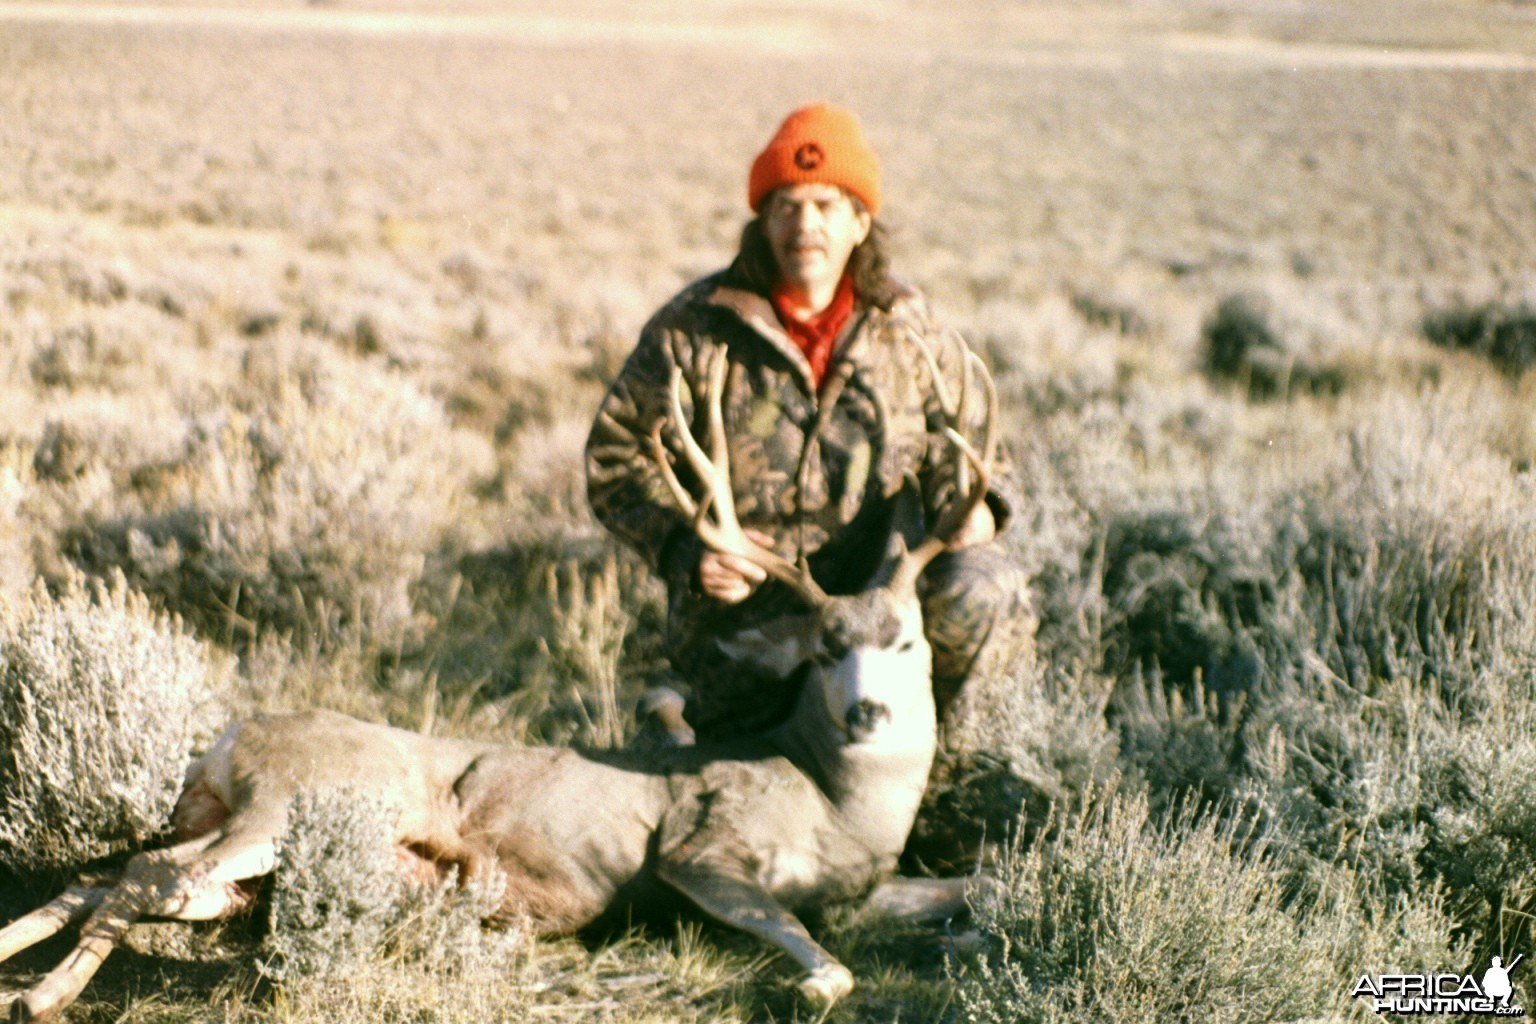 Wyoming Mule Deer